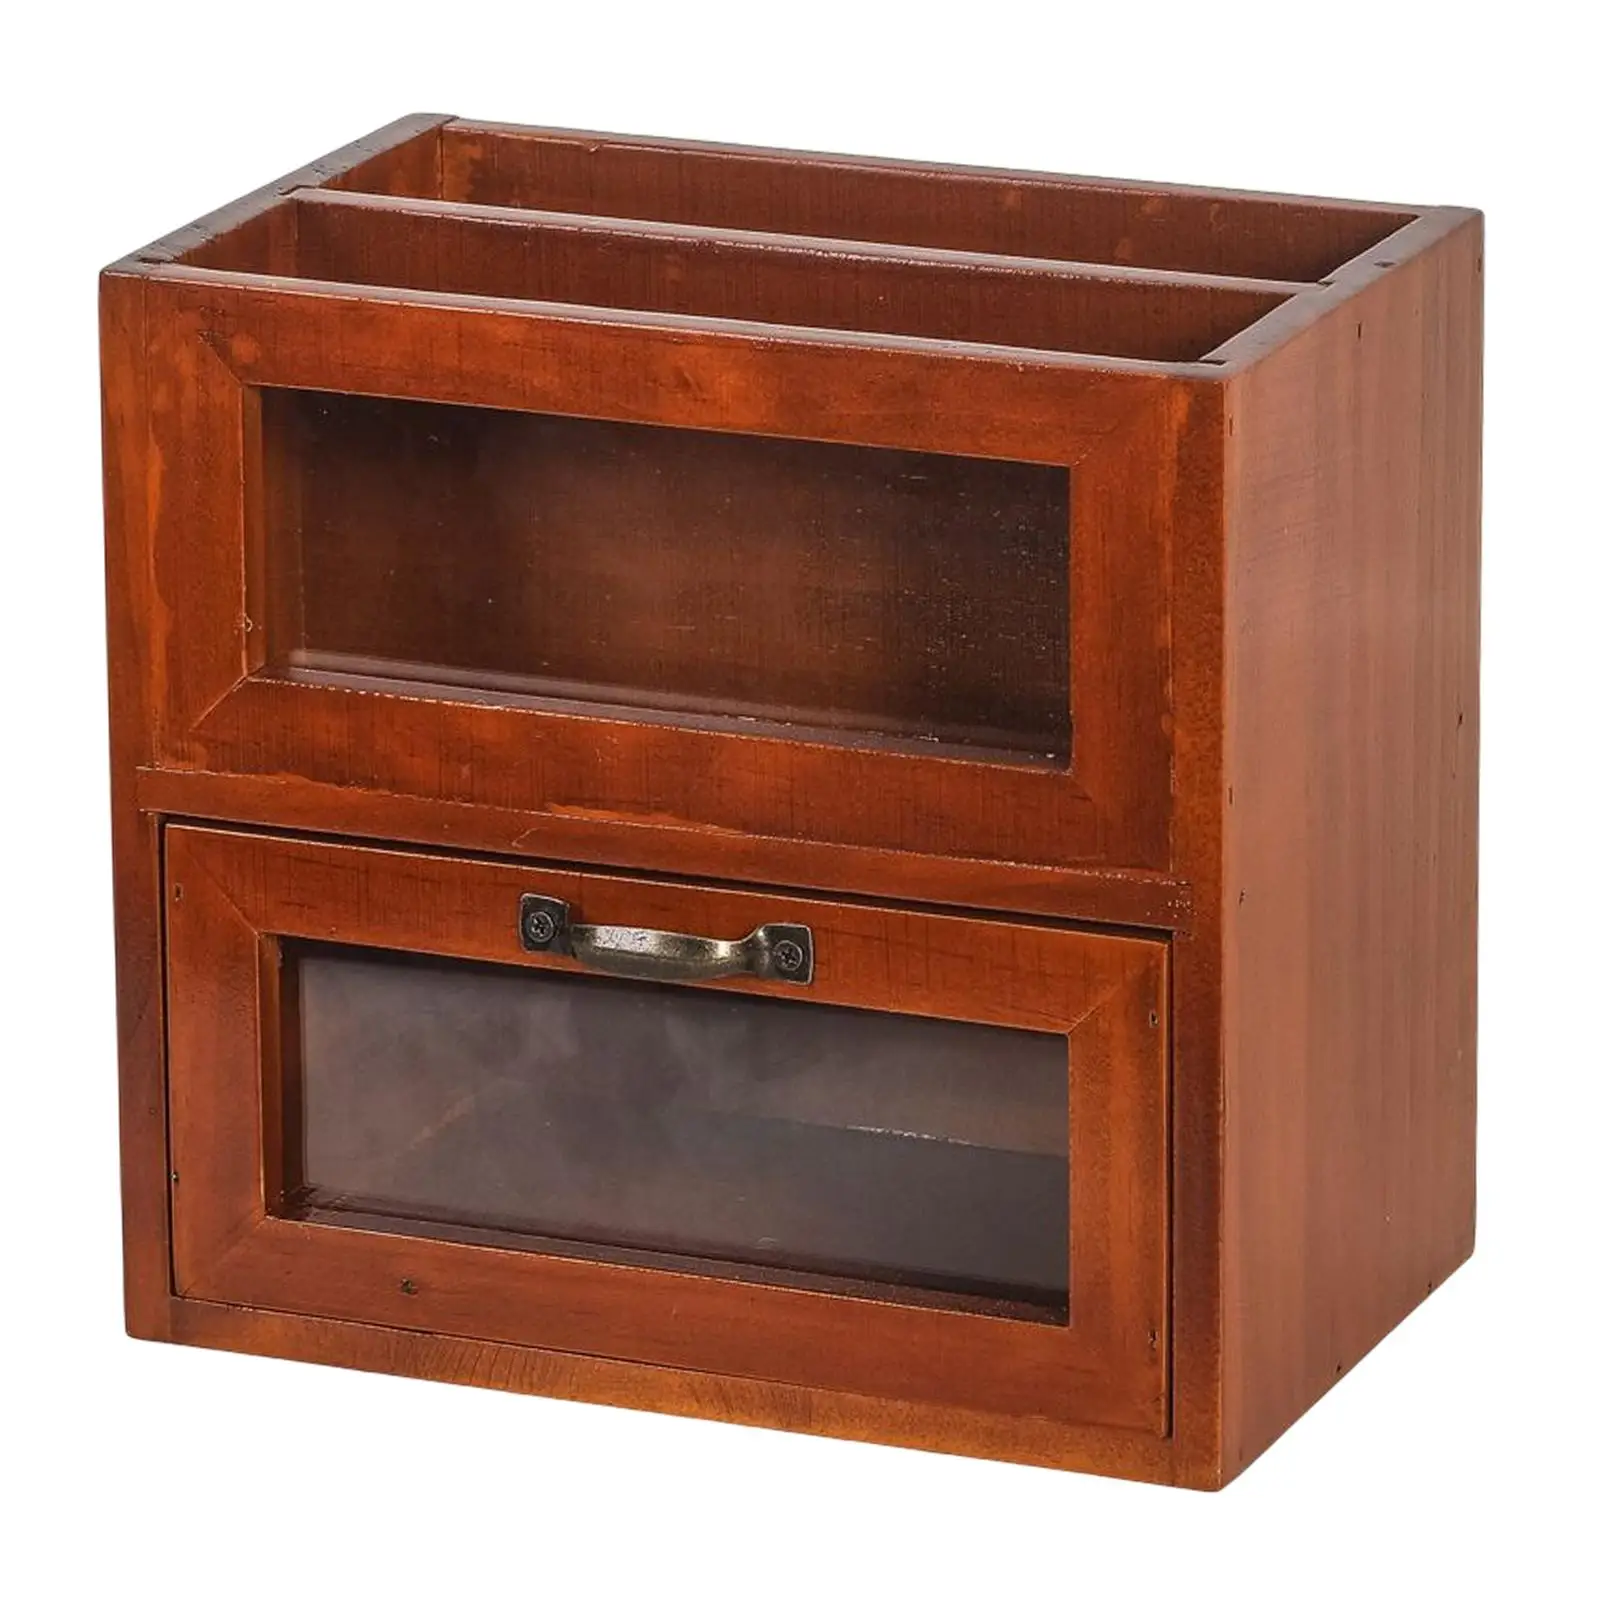 Desktop Storage Cabinet Wooden Organizer Display Case Wooden Box Storage Cabinet Storage Stand Dorm Vanity Bathroom Kitchen